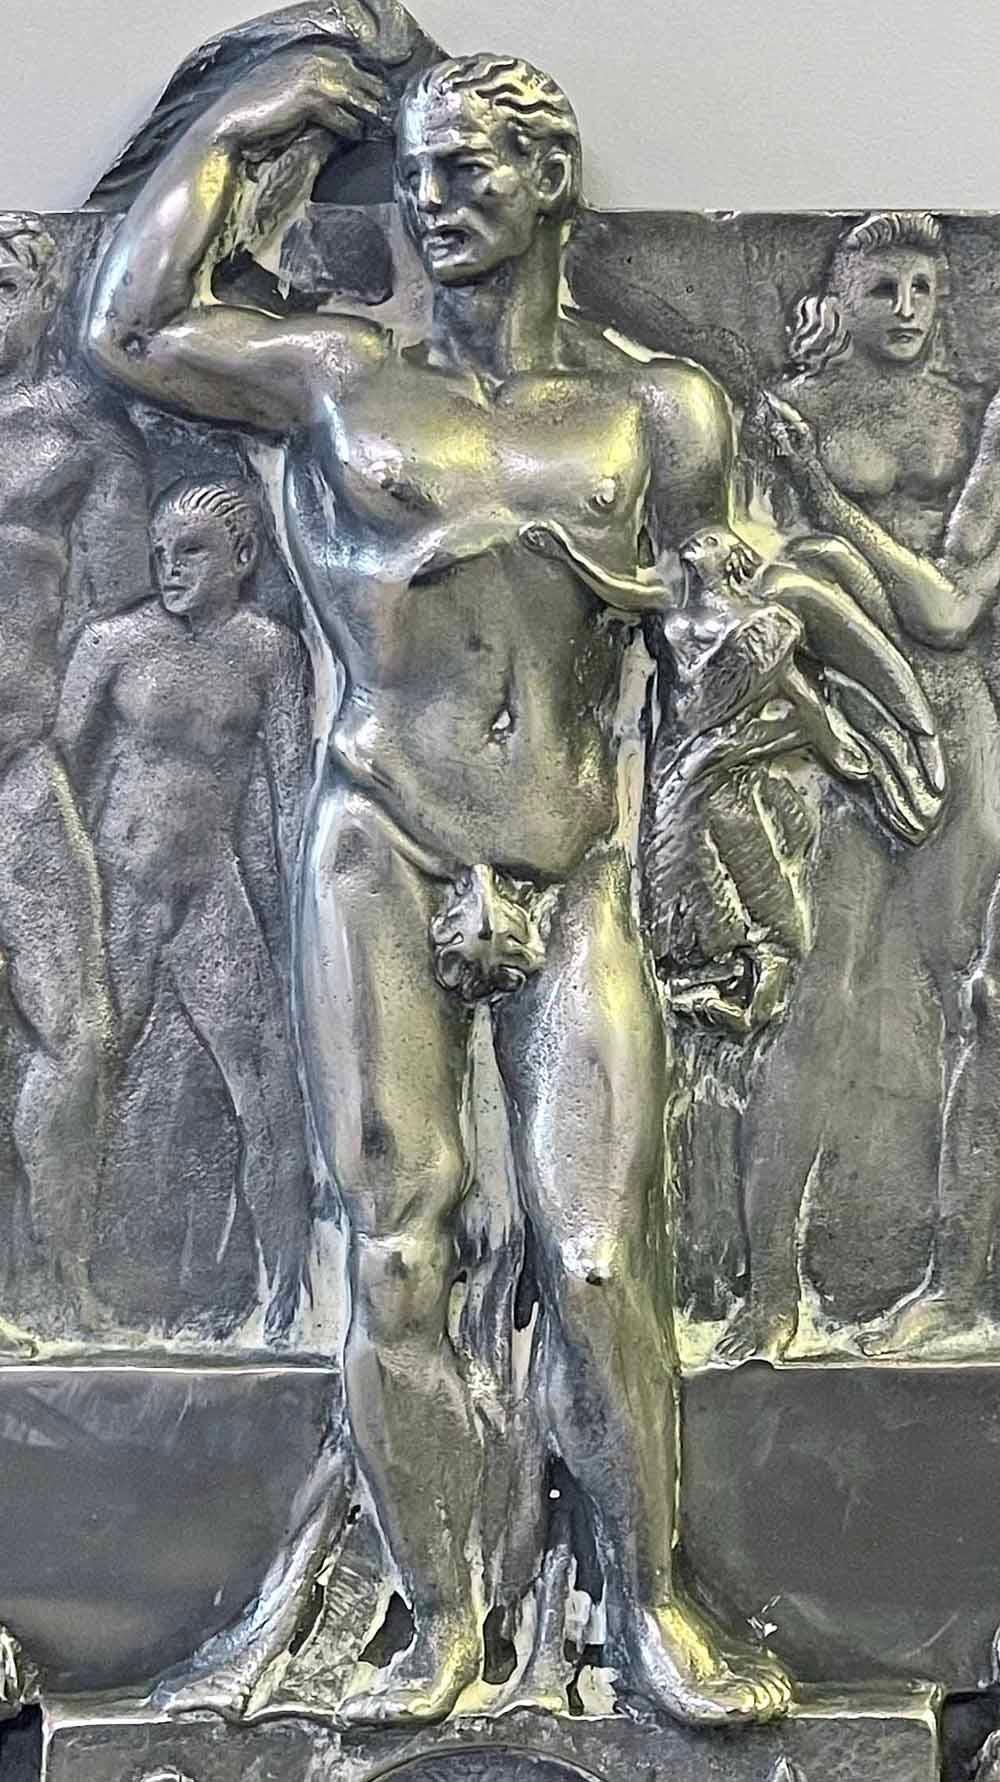 Dans les années 1930, alors que l'Italie valorisait et idéalisait à nouveau le nu masculin - comme en témoigne le célèbre croissant d'athlètes masculins nus au Foro Italico de Rome - ce panneau de bronze argenté a été sculpté avec une frise de